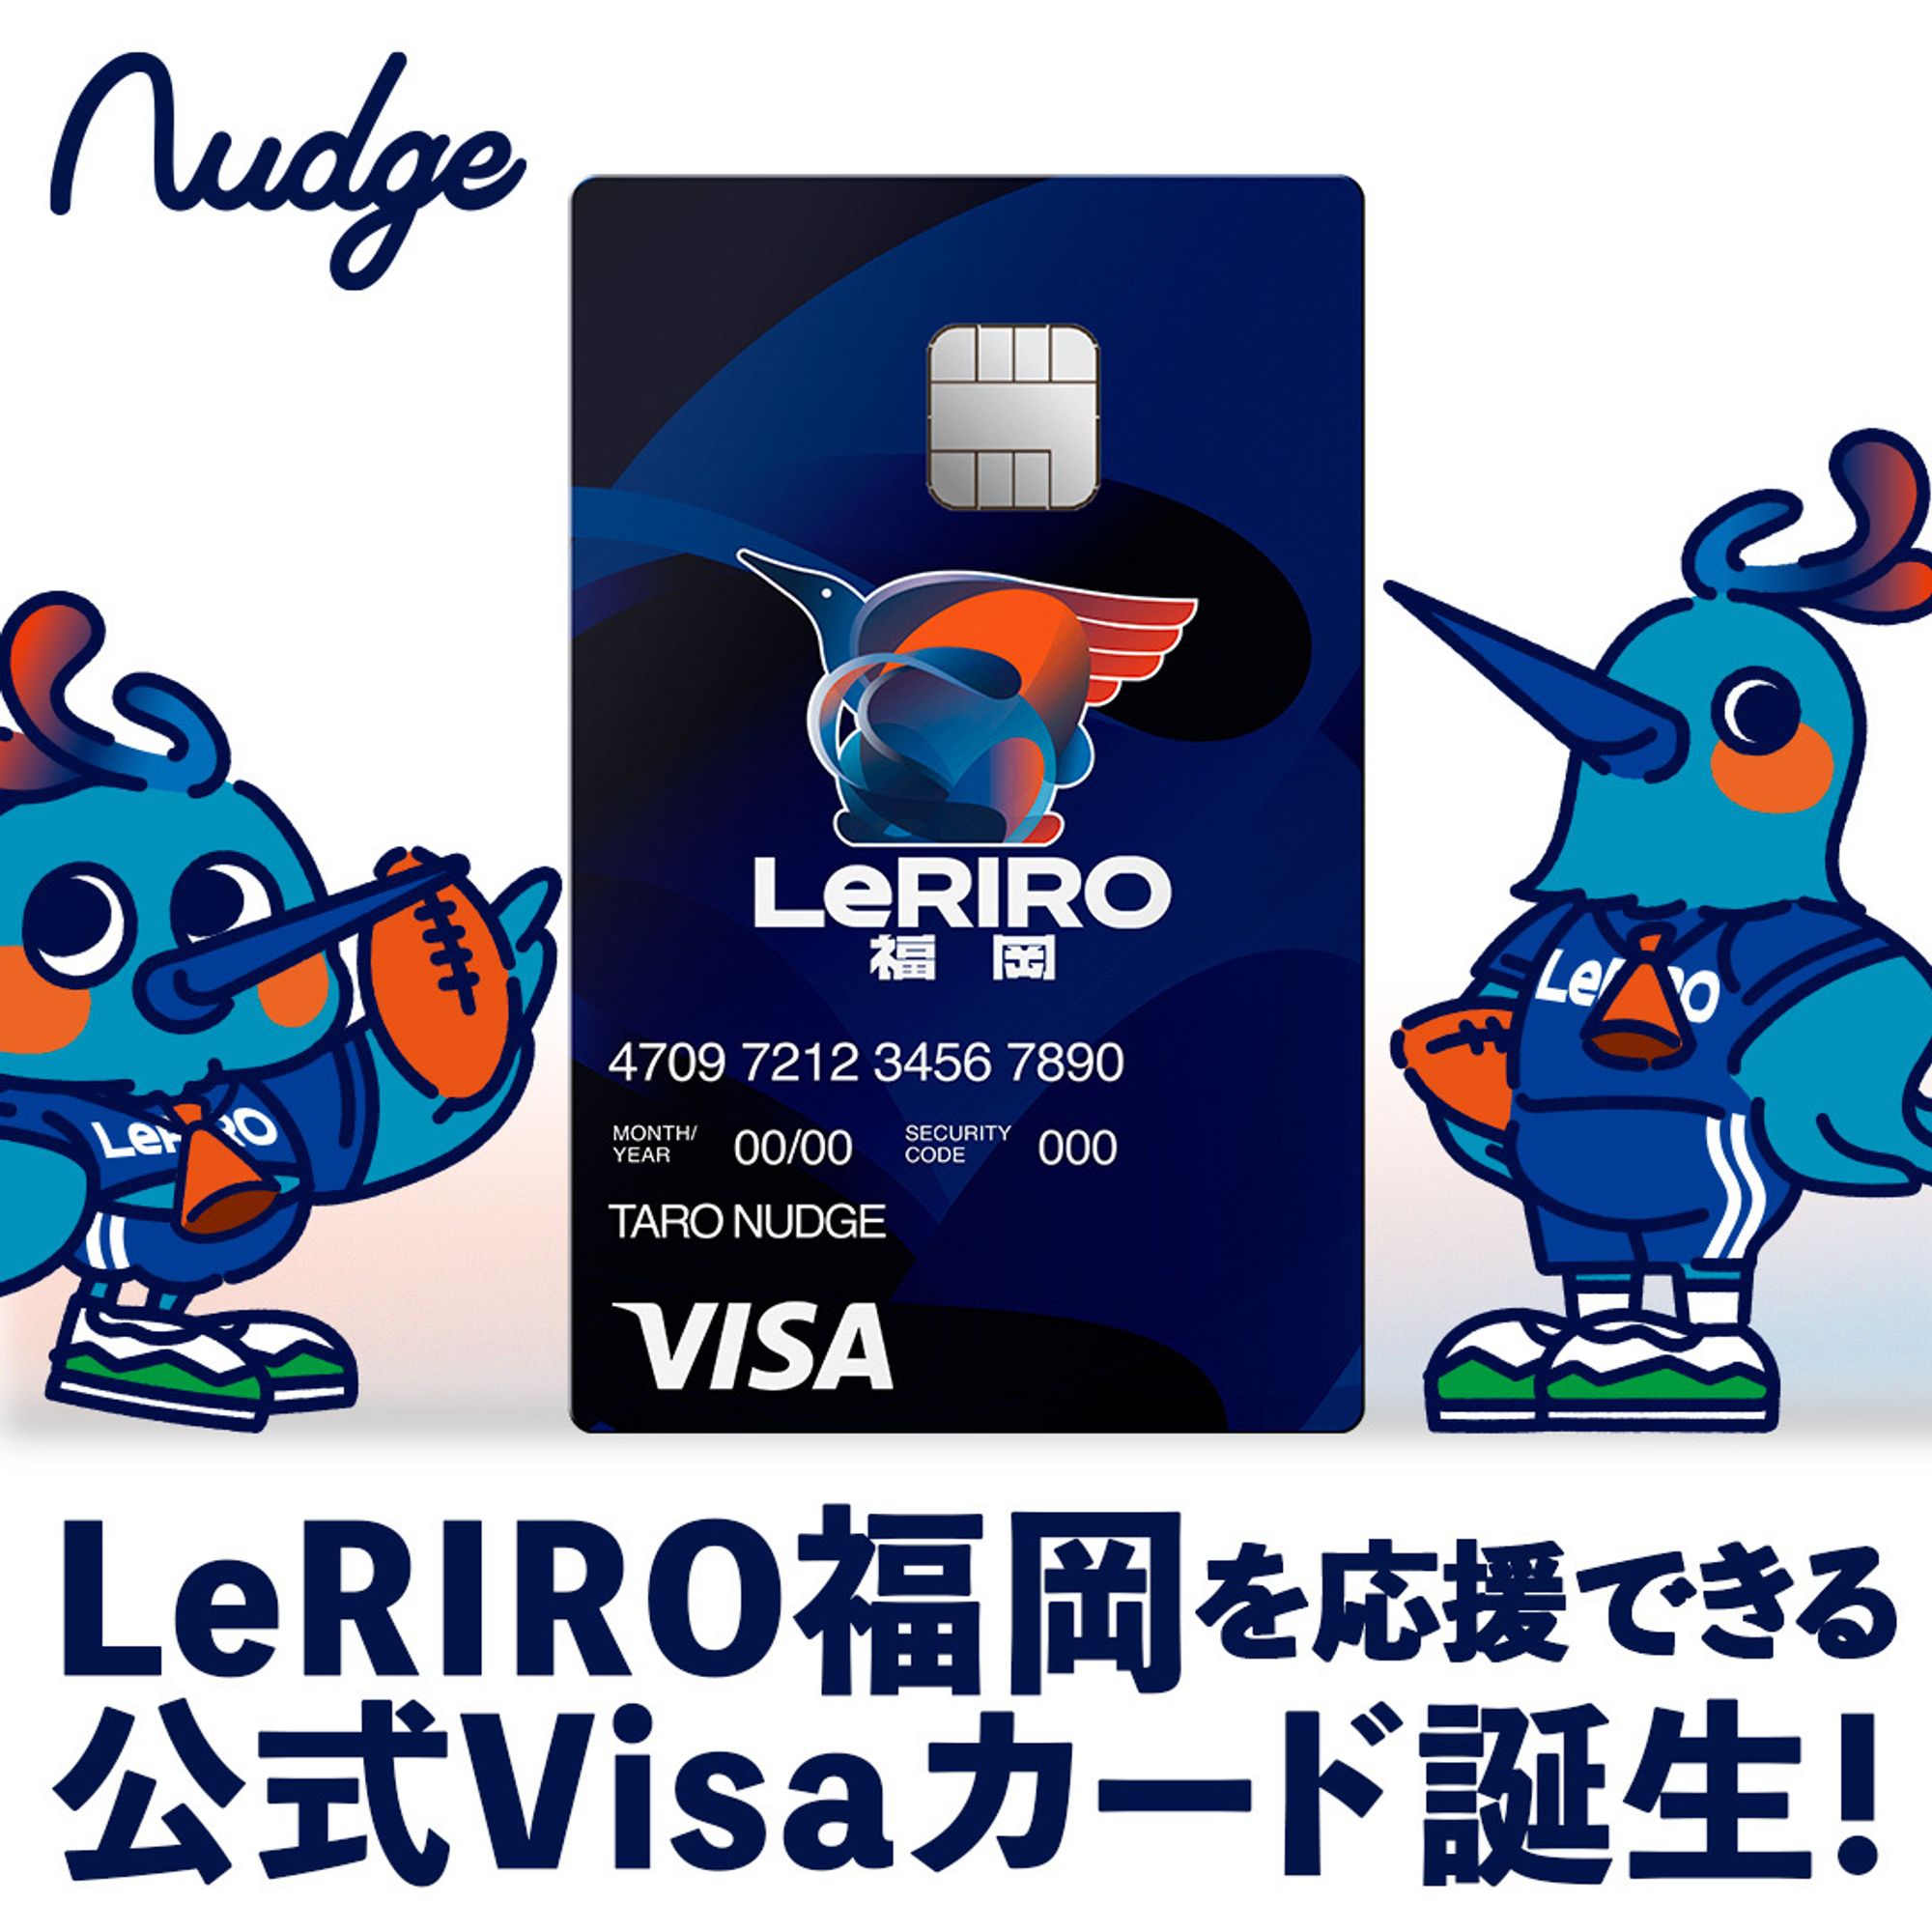 LeRIRO福岡のクレジットカードを発行開始(ナッジ社と提携)のお知らせ image